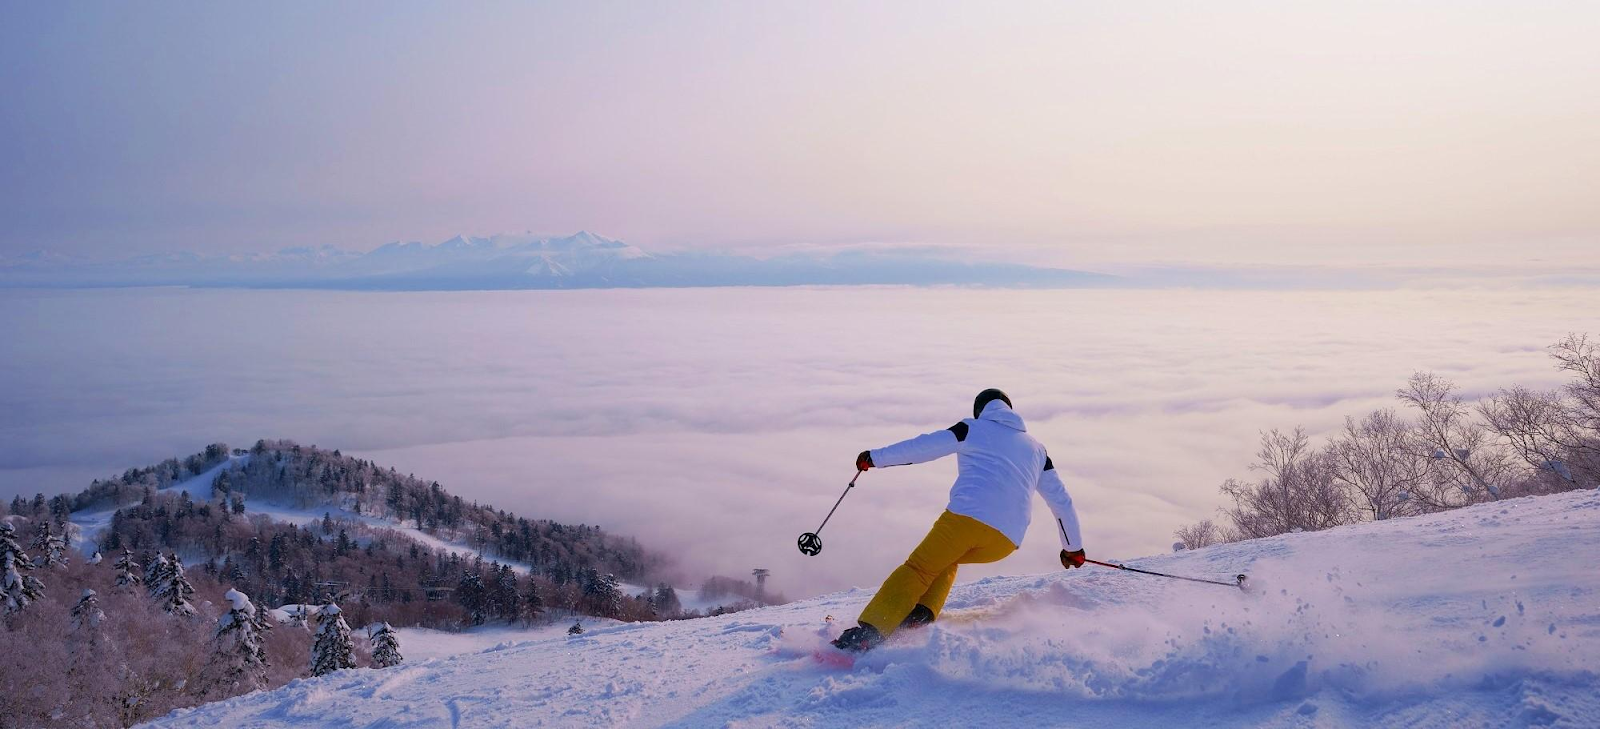 1.トップクラスの雪質と規模を誇る「富良野スキー場」